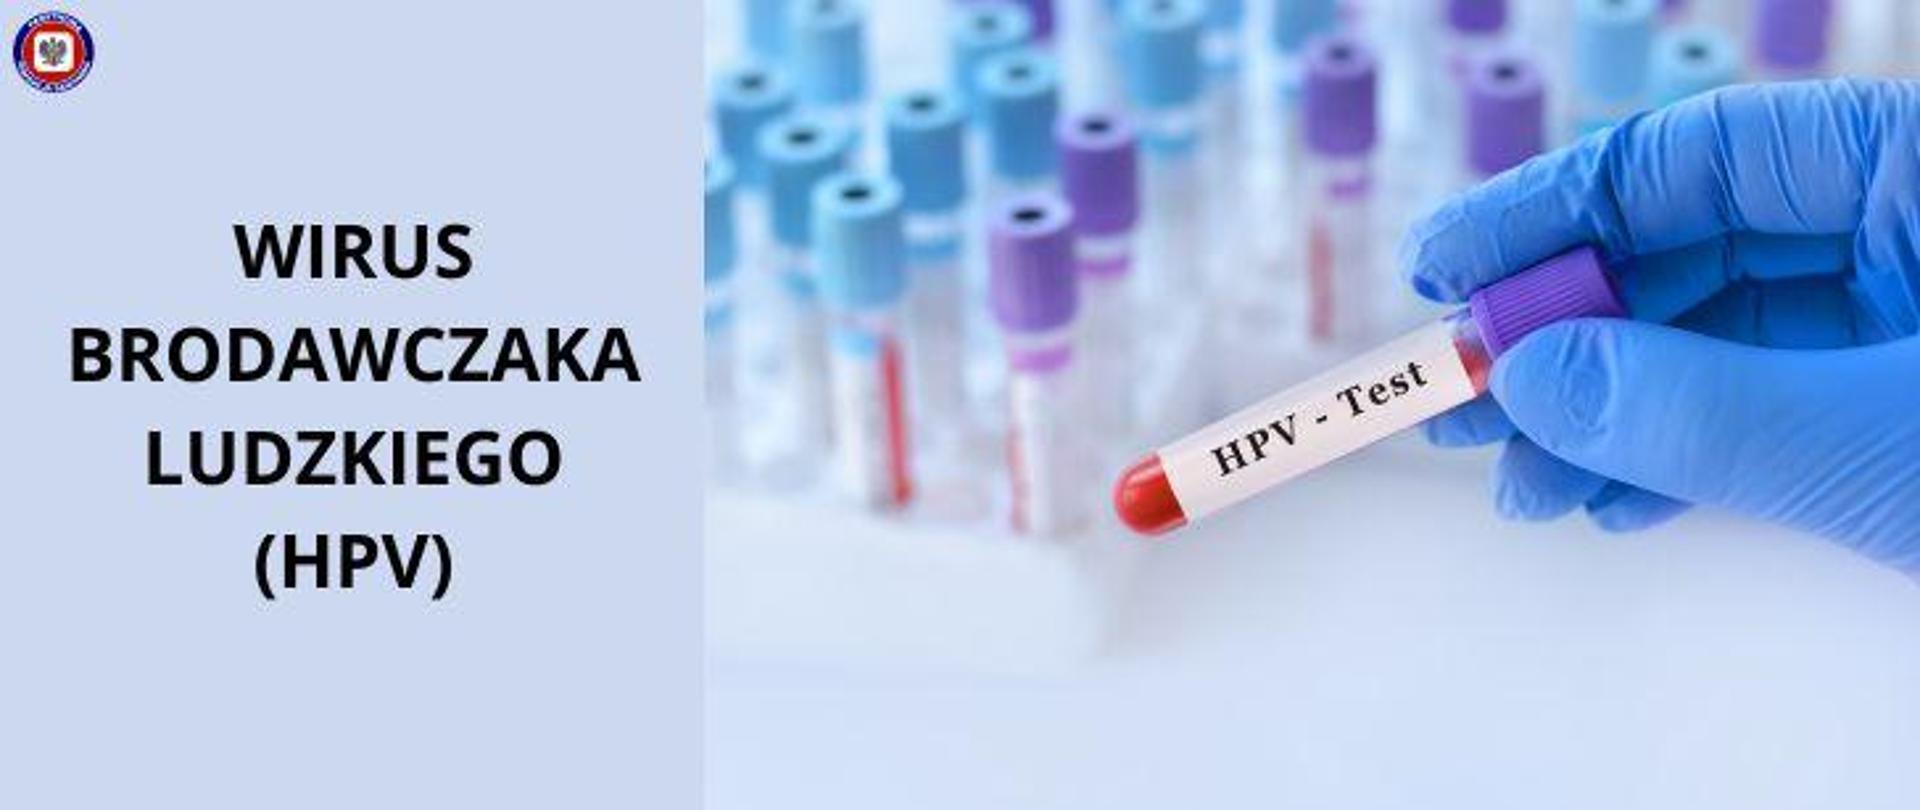 Po prawej na tle jasnego blatu z fiolkami próbek laboratoryjnych stojących w jasnych statywach, dłoń w niebieskiej lateksowej rękawiczce trzymająca fiolkę zawierającą próbkę krwi, opisaną ciemnym napisem na białym tle "HPV - Test". Po lewej na błękitnym tle ciemny napis "Wirus brodawczaka ludzkiego (HPV)" W lewym górnym rogu logo Państwowej Inspekcji Sanitarnej. 